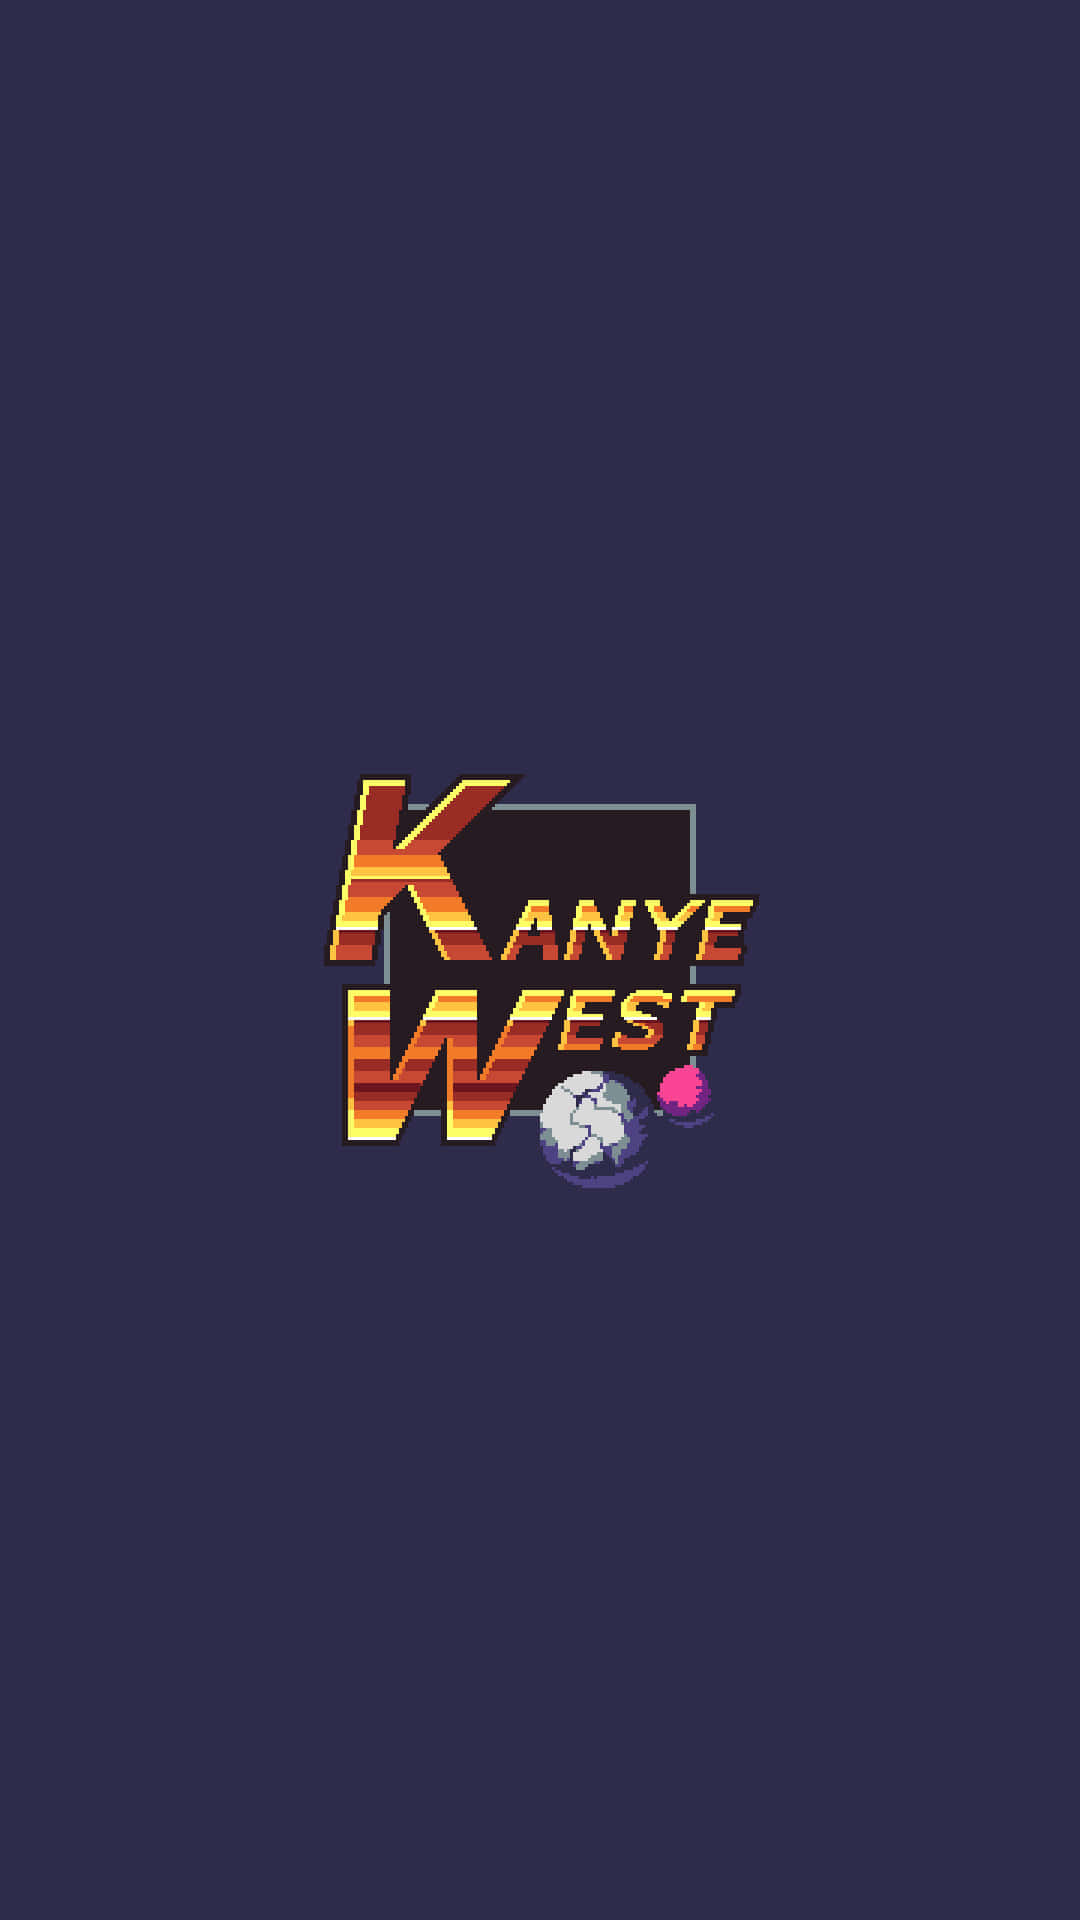 Kanyewest Hintergrund